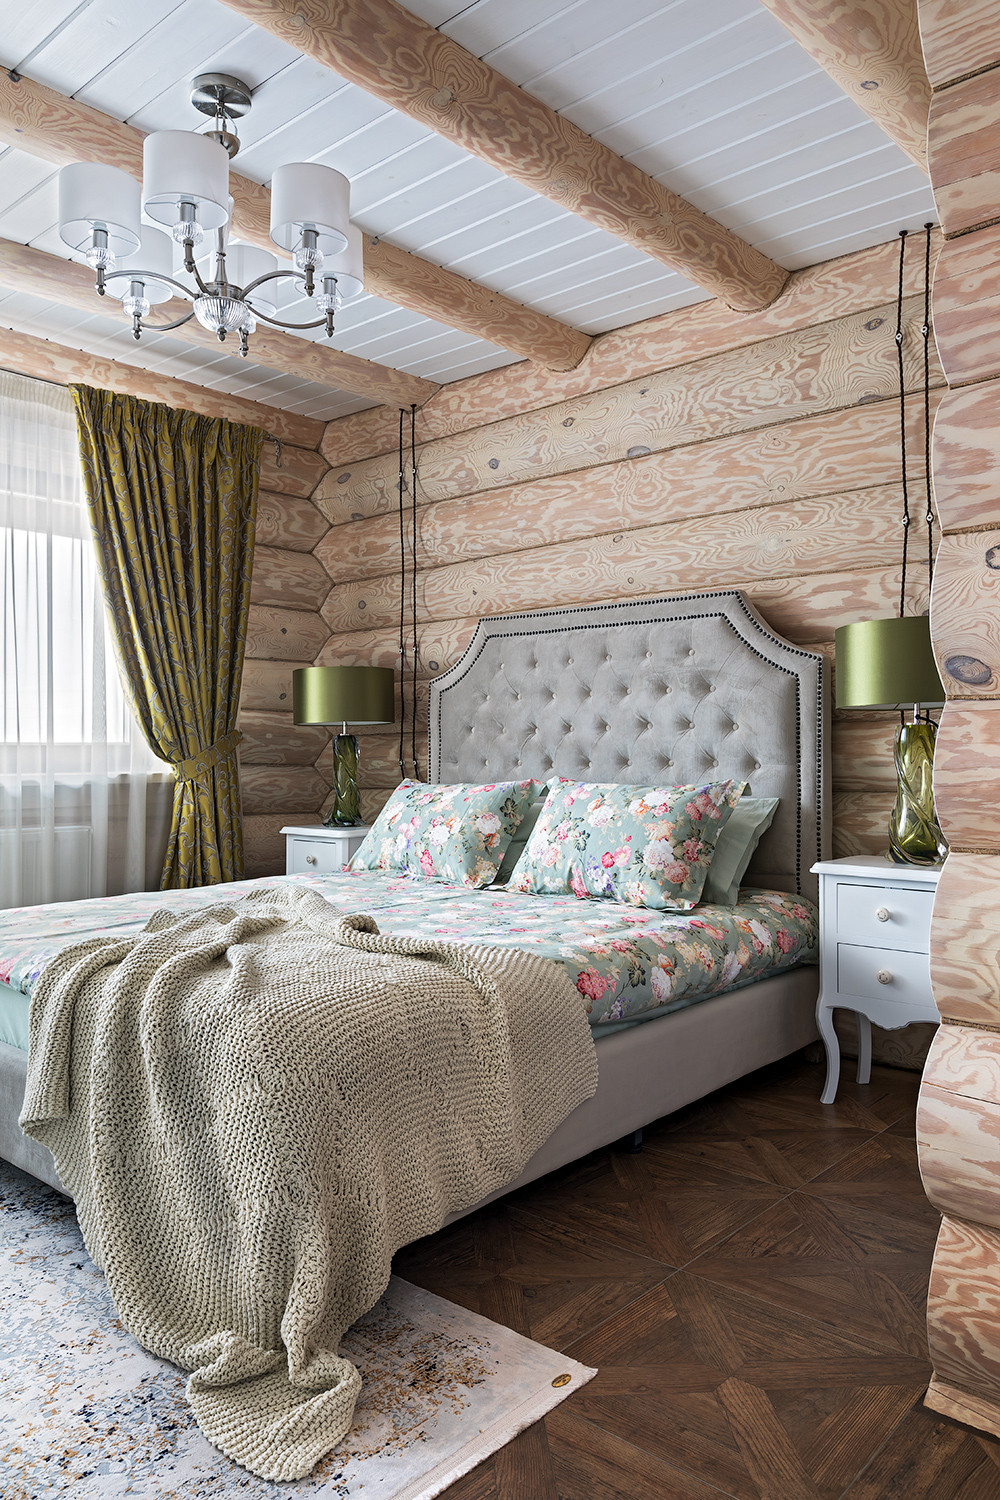 Phòng ngủ mộc mạc với bảng màu của gỗ tự nhiên kết hợp màu xanh pastel trên bộ chăn ga gối hoa lá mộng mơ.